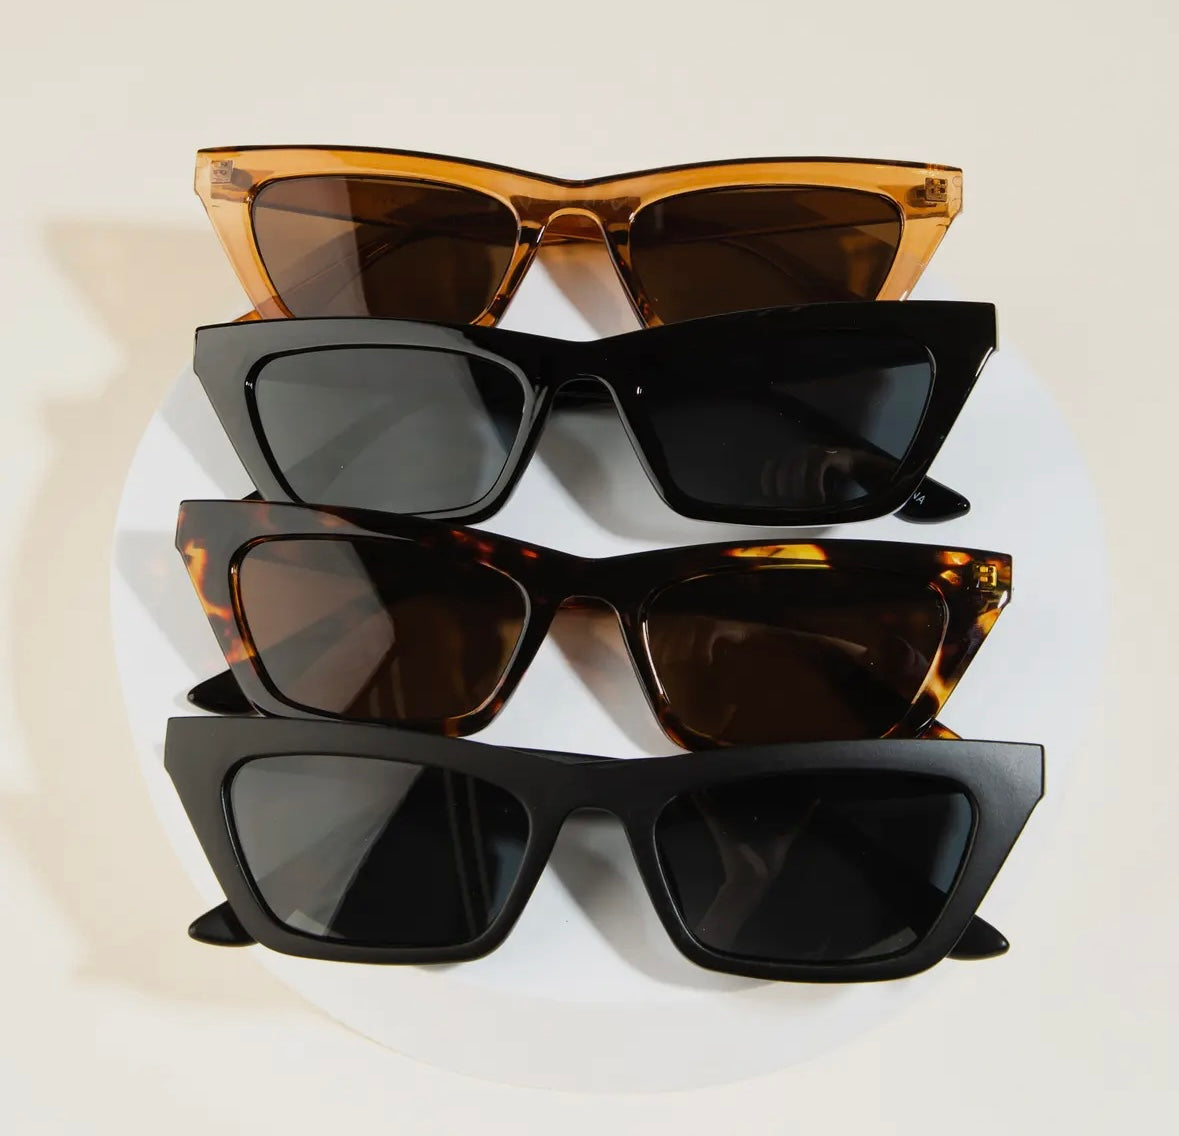 Angular spexx sunglasses